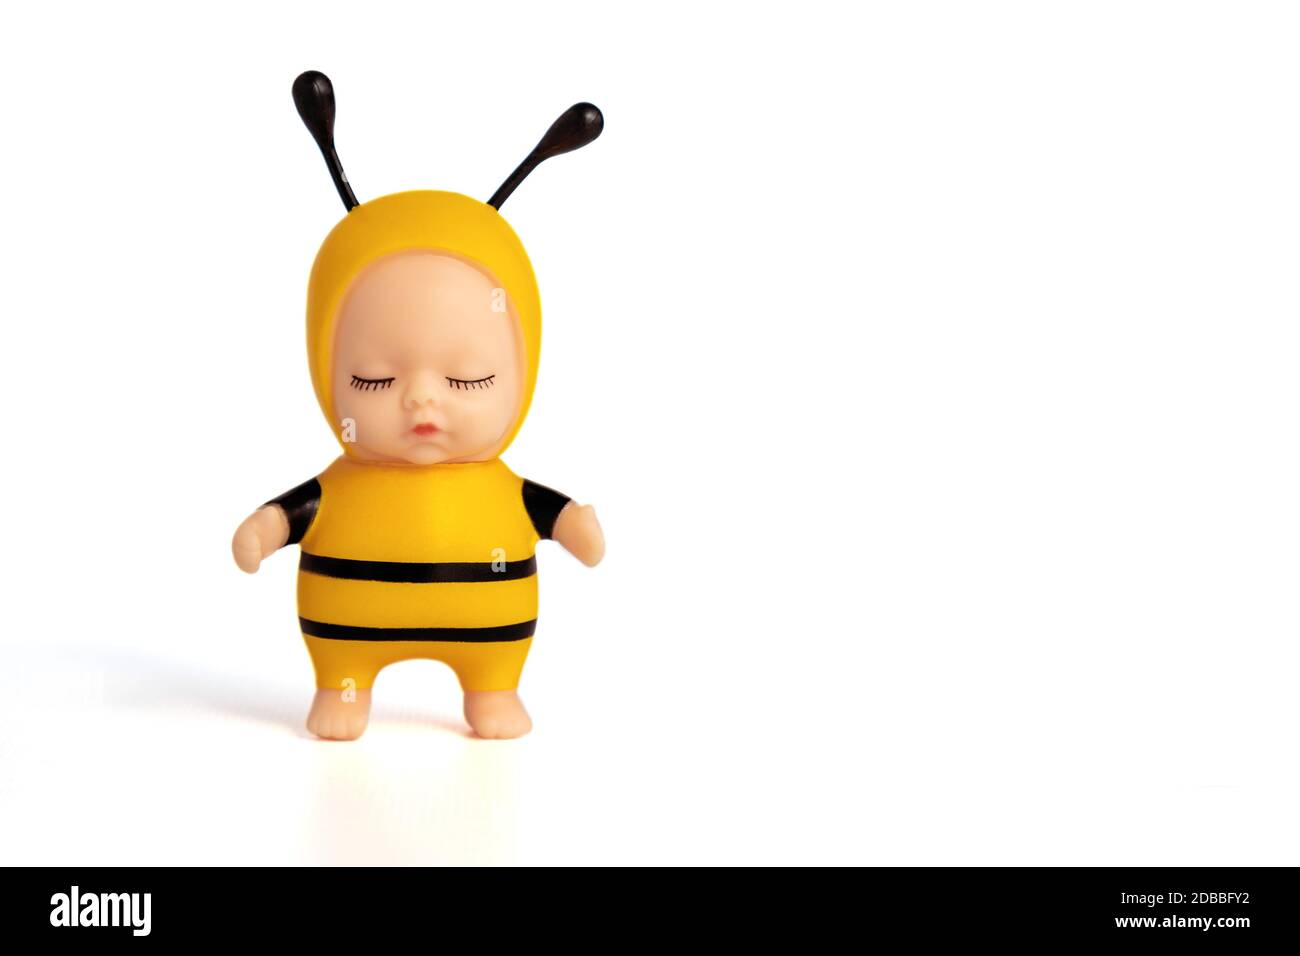 Niedliche kleine Puppe in einem Bienenkostüm mit geschlossenen Augen. Steht auf einem weißen isolierten Hintergrund. Ein entzückendes Spielzeug für ein Geschenk oder ein Kinderspiel. Weichfokus. Stockfoto